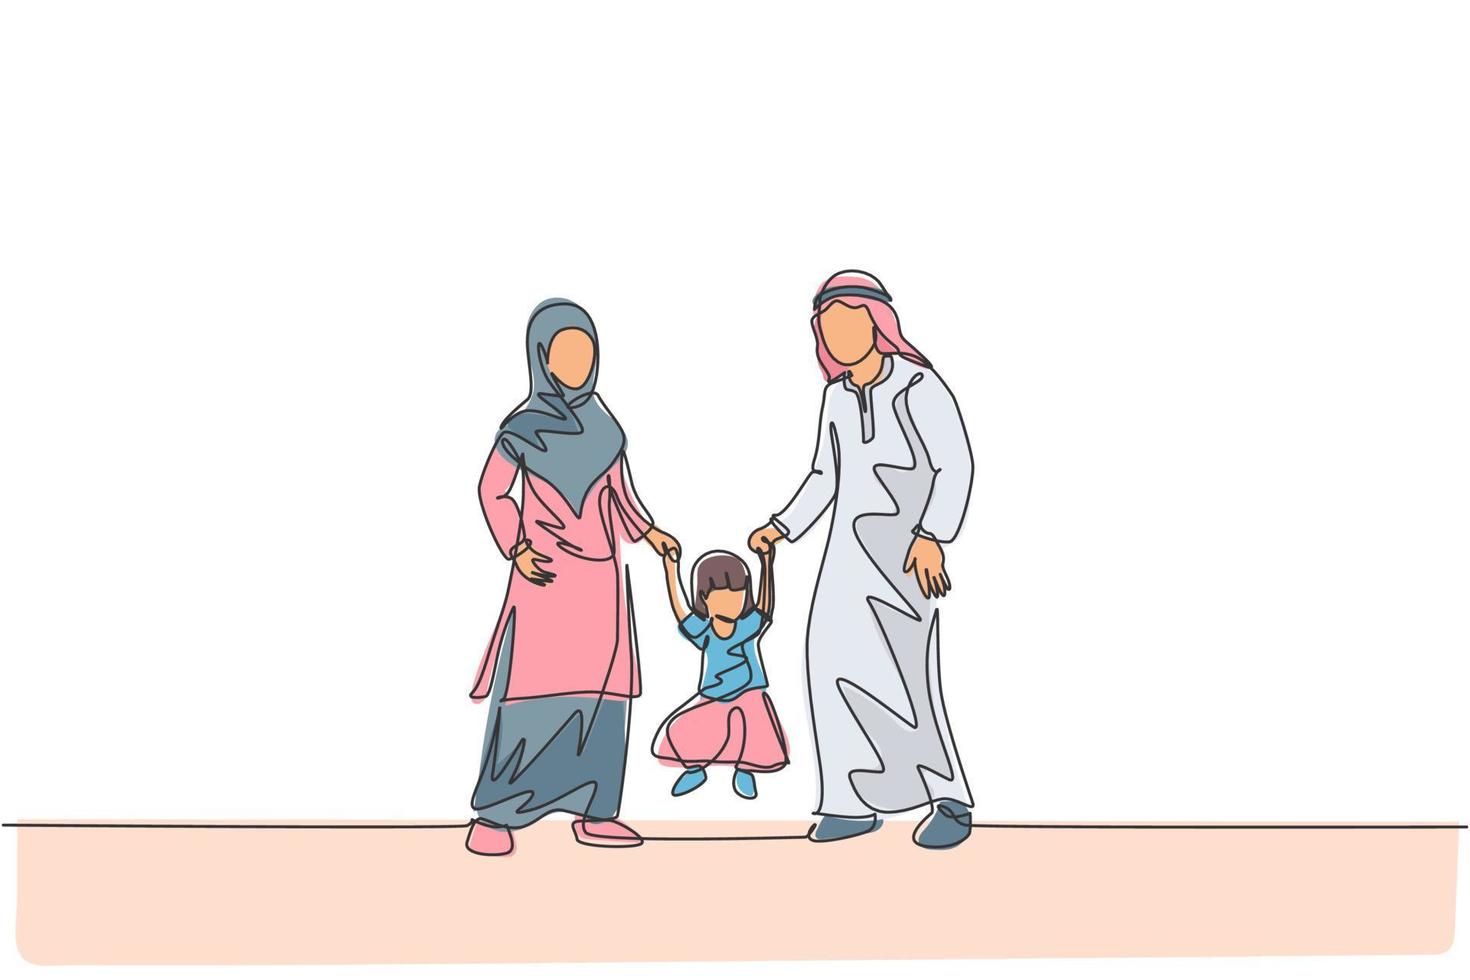 enda kontinuerlig linjeteckning av ung islamisk mamma och pappa som leker och håller sin dotters hand, lyckligt föräldraskap. arabiska familjeomsorg koncept. trendig en linje rita design vektor illustration